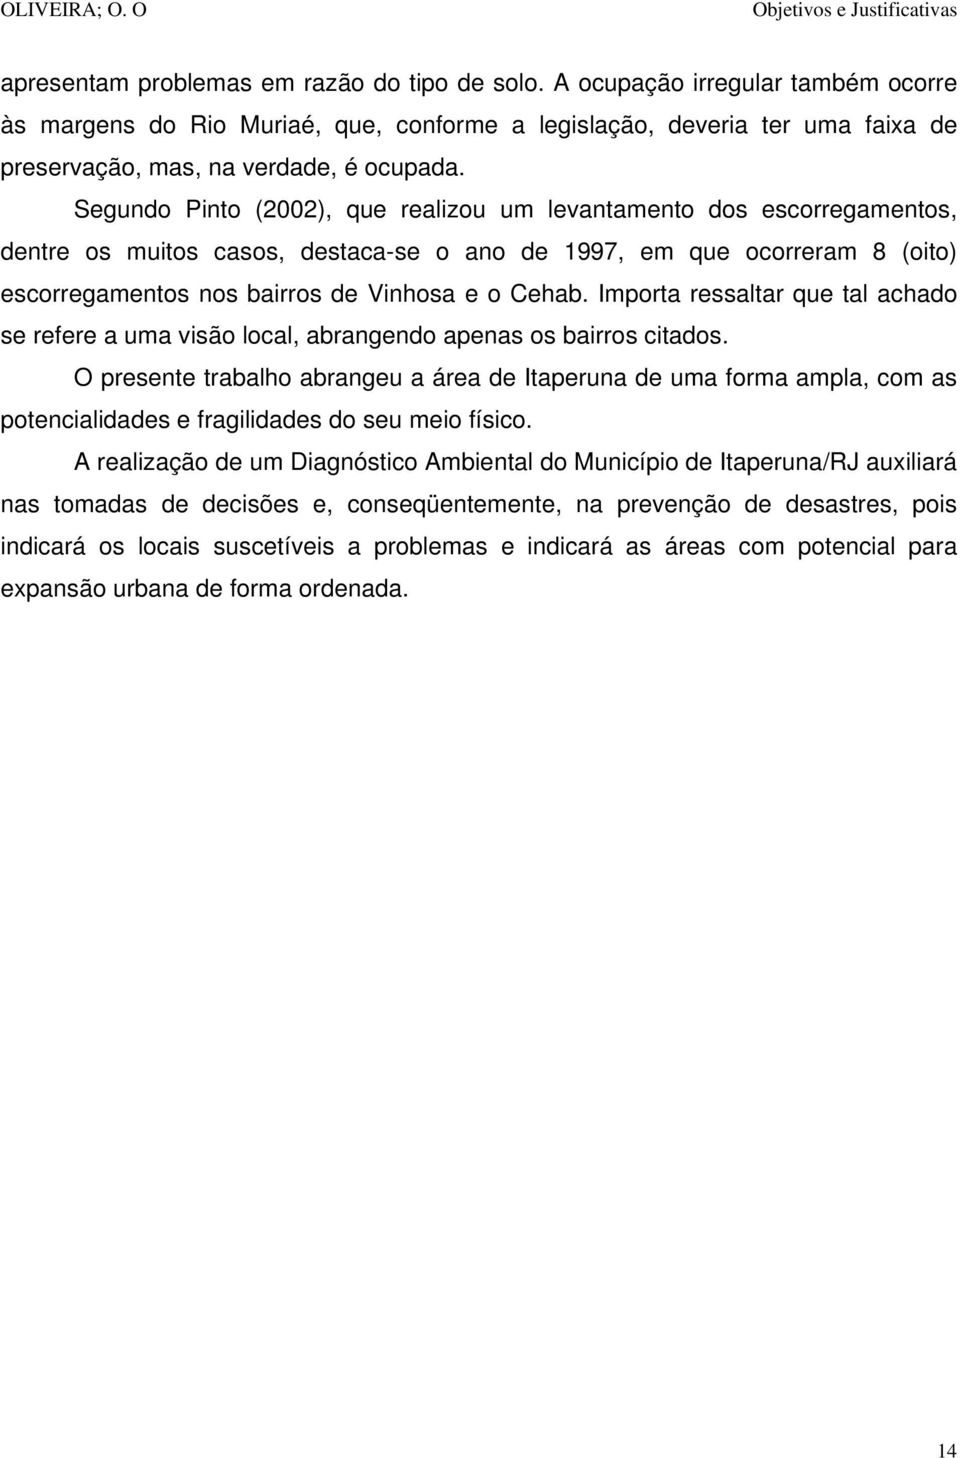 Segundo Pinto (2002), que realizou um levantamento dos escorregamentos, dentre os muitos casos, destaca-se o ano de 1997, em que ocorreram 8 (oito) escorregamentos nos bairros de Vinhosa e o Cehab.